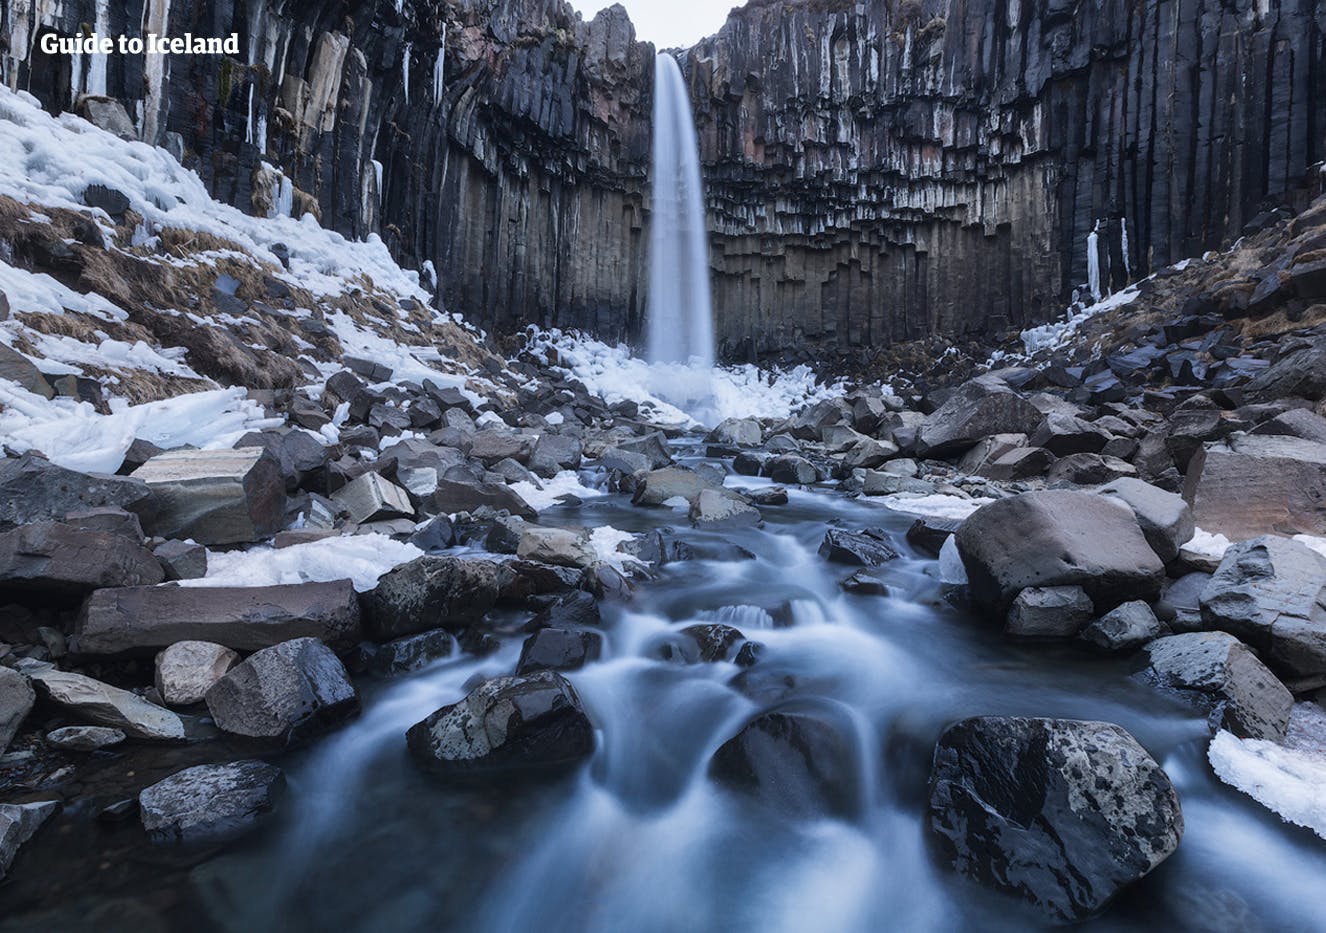 Svartifoss w Skaftafell to wodospad otoczony sześciokątnymi bazaltowymi kolumnami.